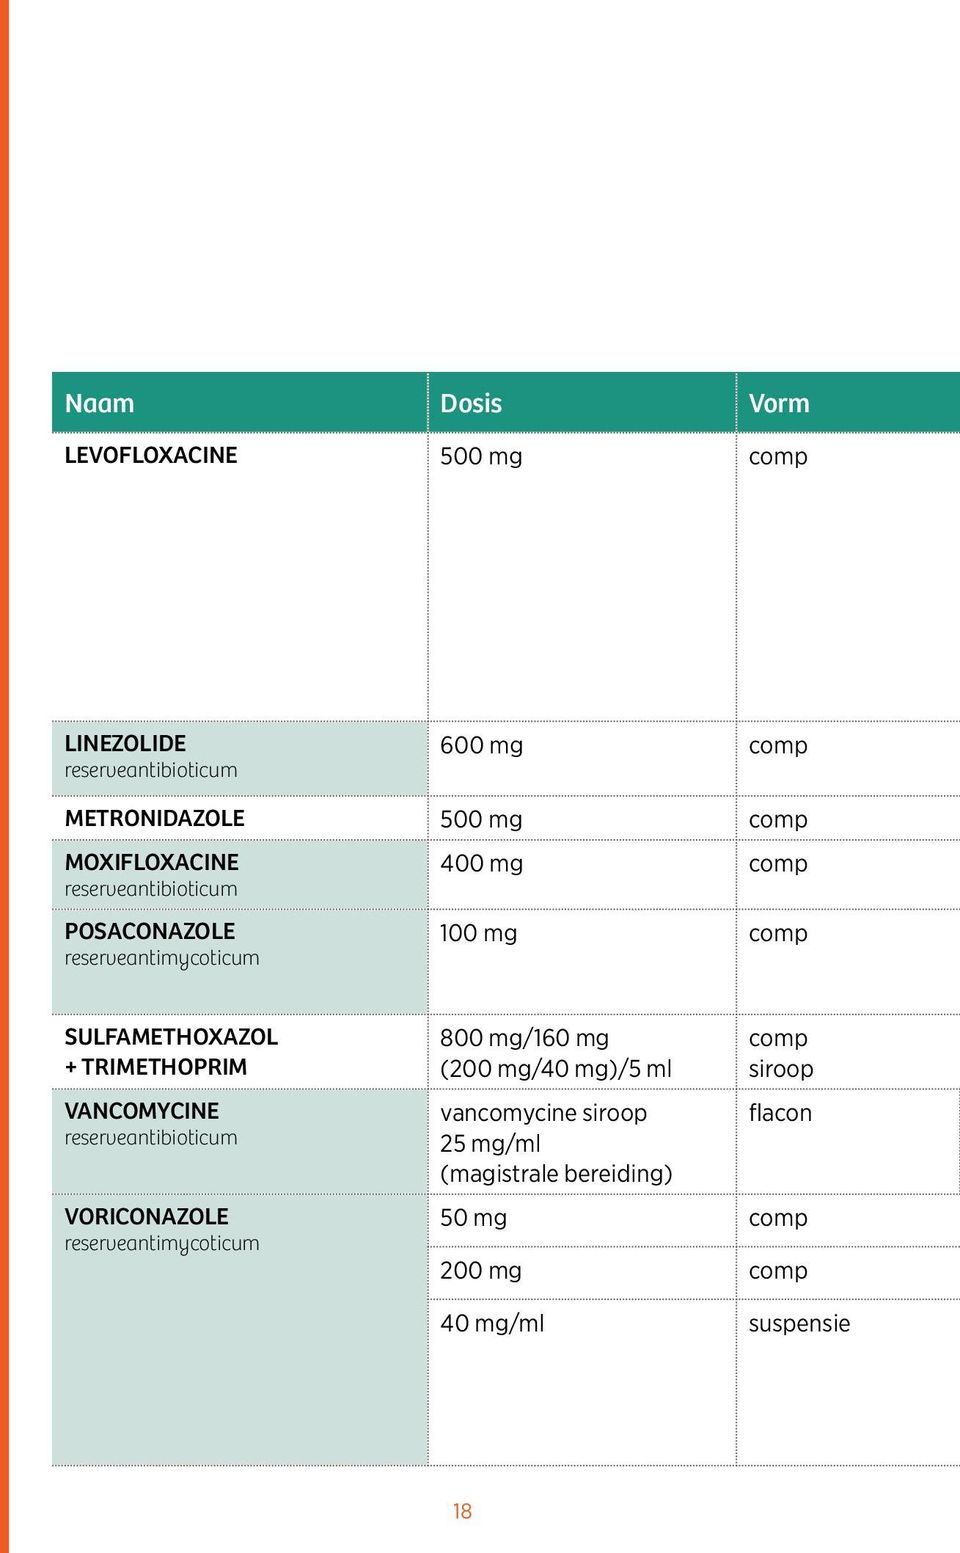 TRIMETHOPRIM VANCOMYCINE reserveantibioticum VORICONAZOLE reserveantimycoticum 800 mg/160 mg (200 mg/40 mg)/5